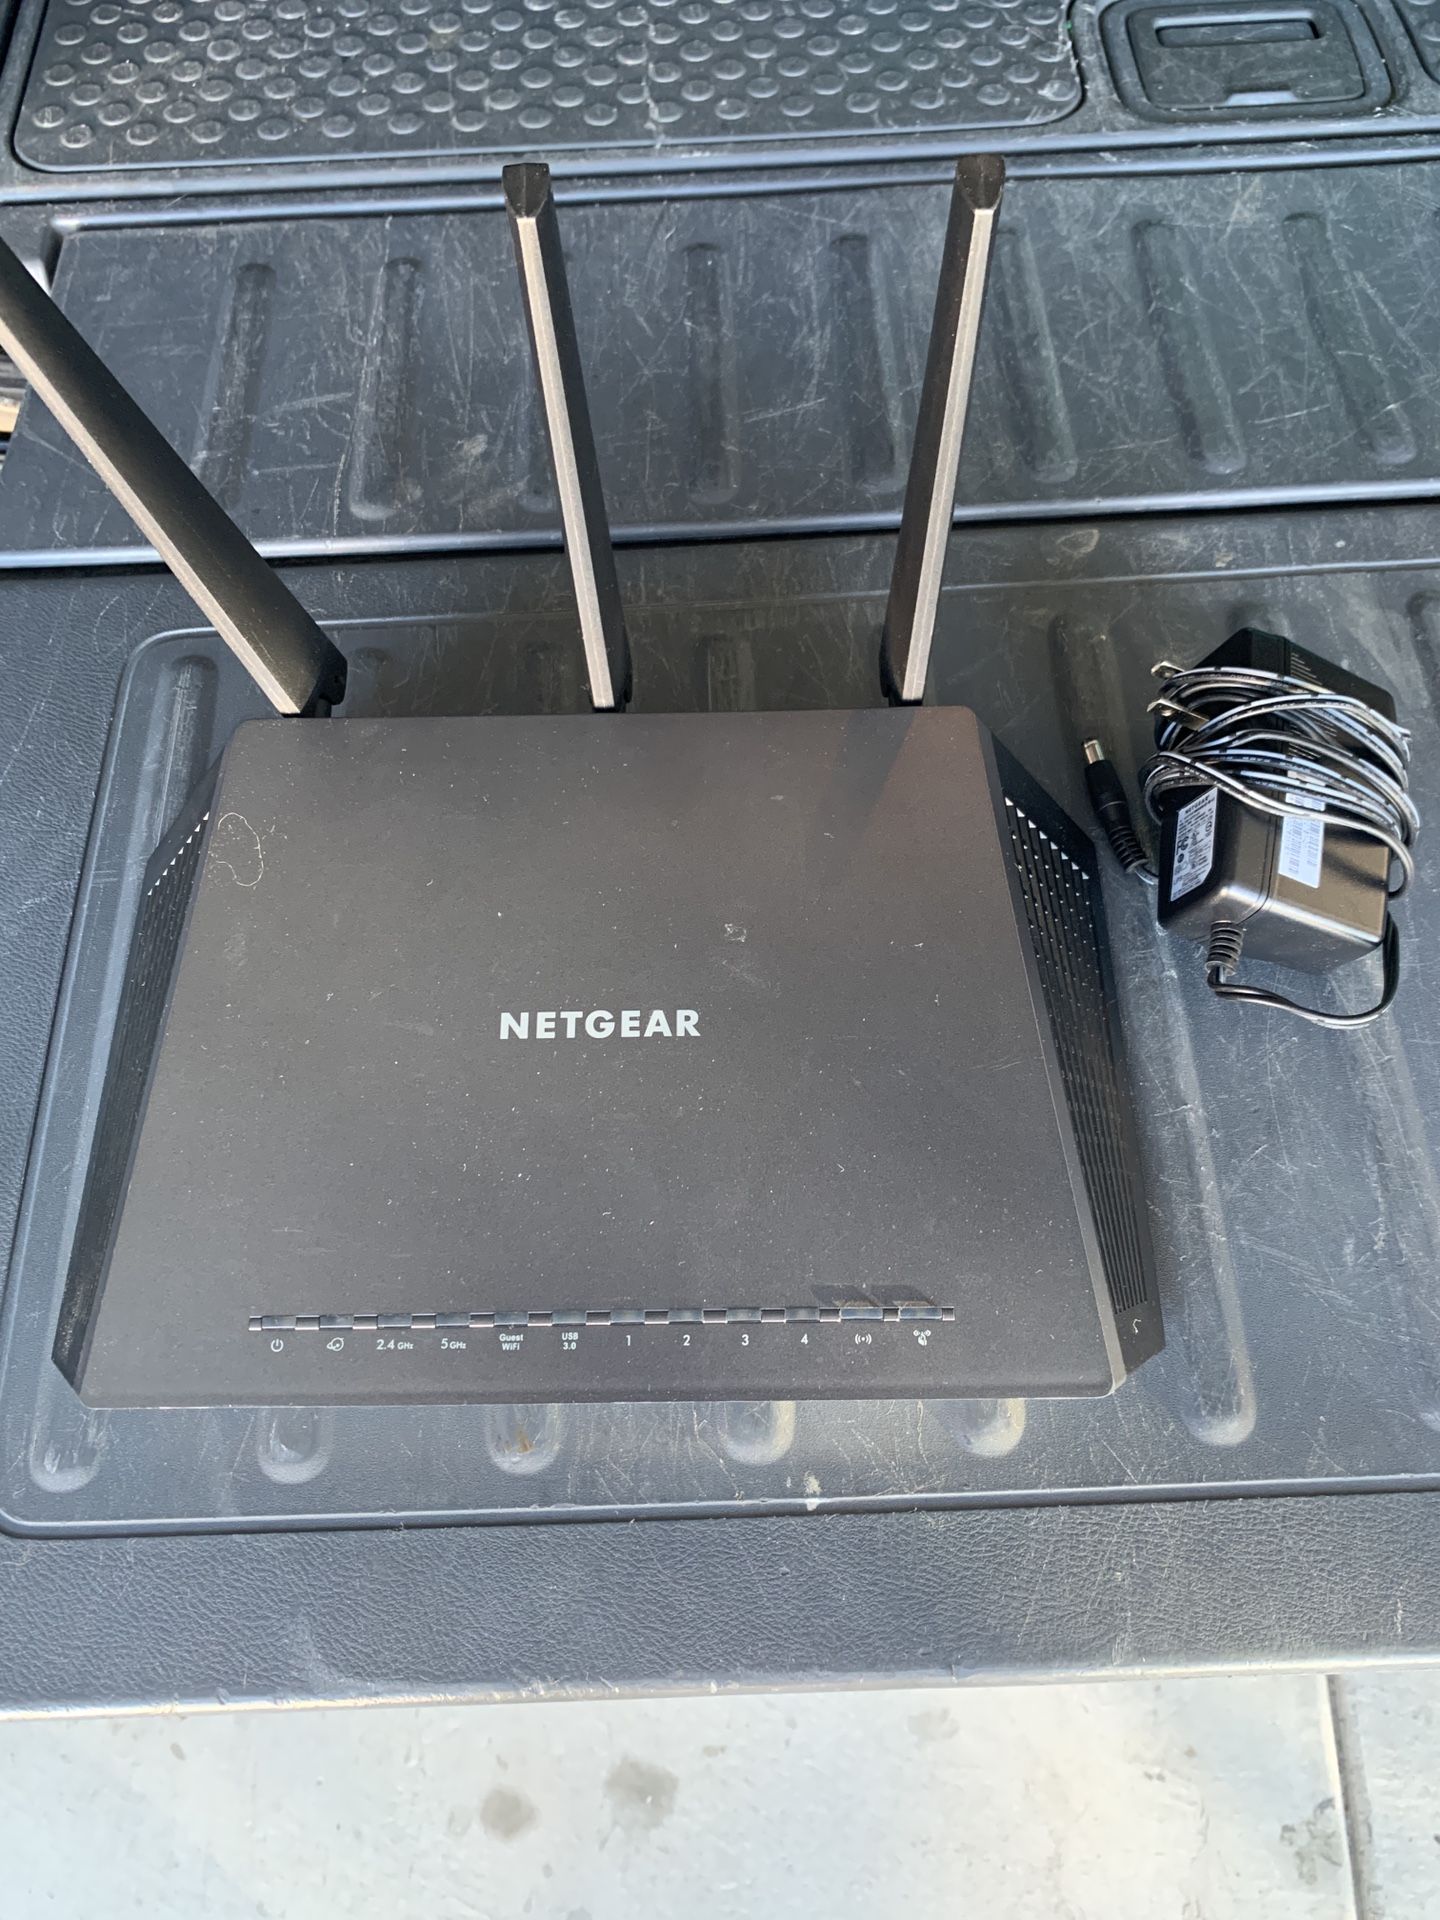 Netgear Nighthawk AC 1900 Smart Wifi Router